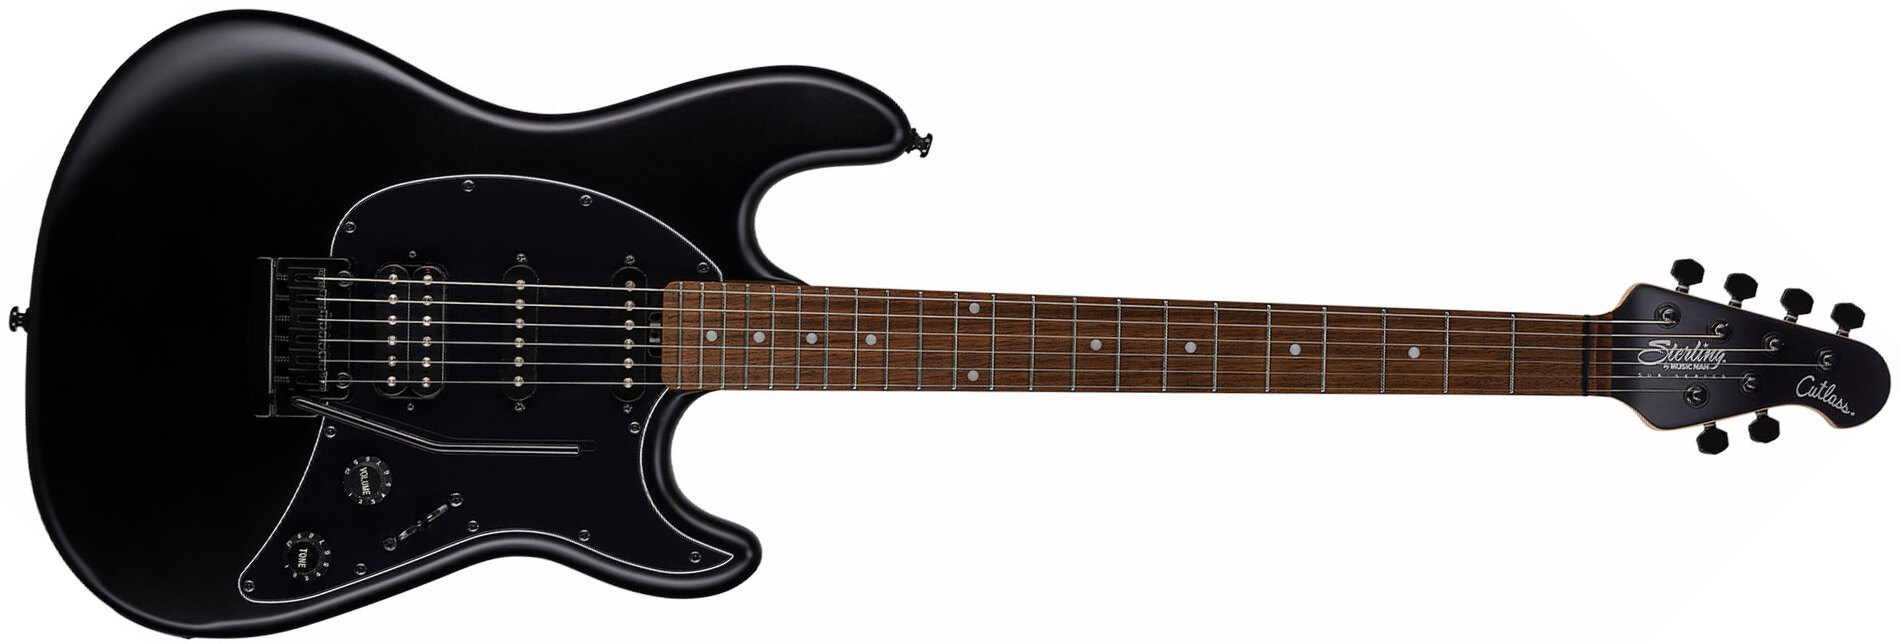 Sterling By Musicman Cutlass Ct30 Hss Trem Lau - Stealth Black - Elektrische gitaar in Str-vorm - Main picture